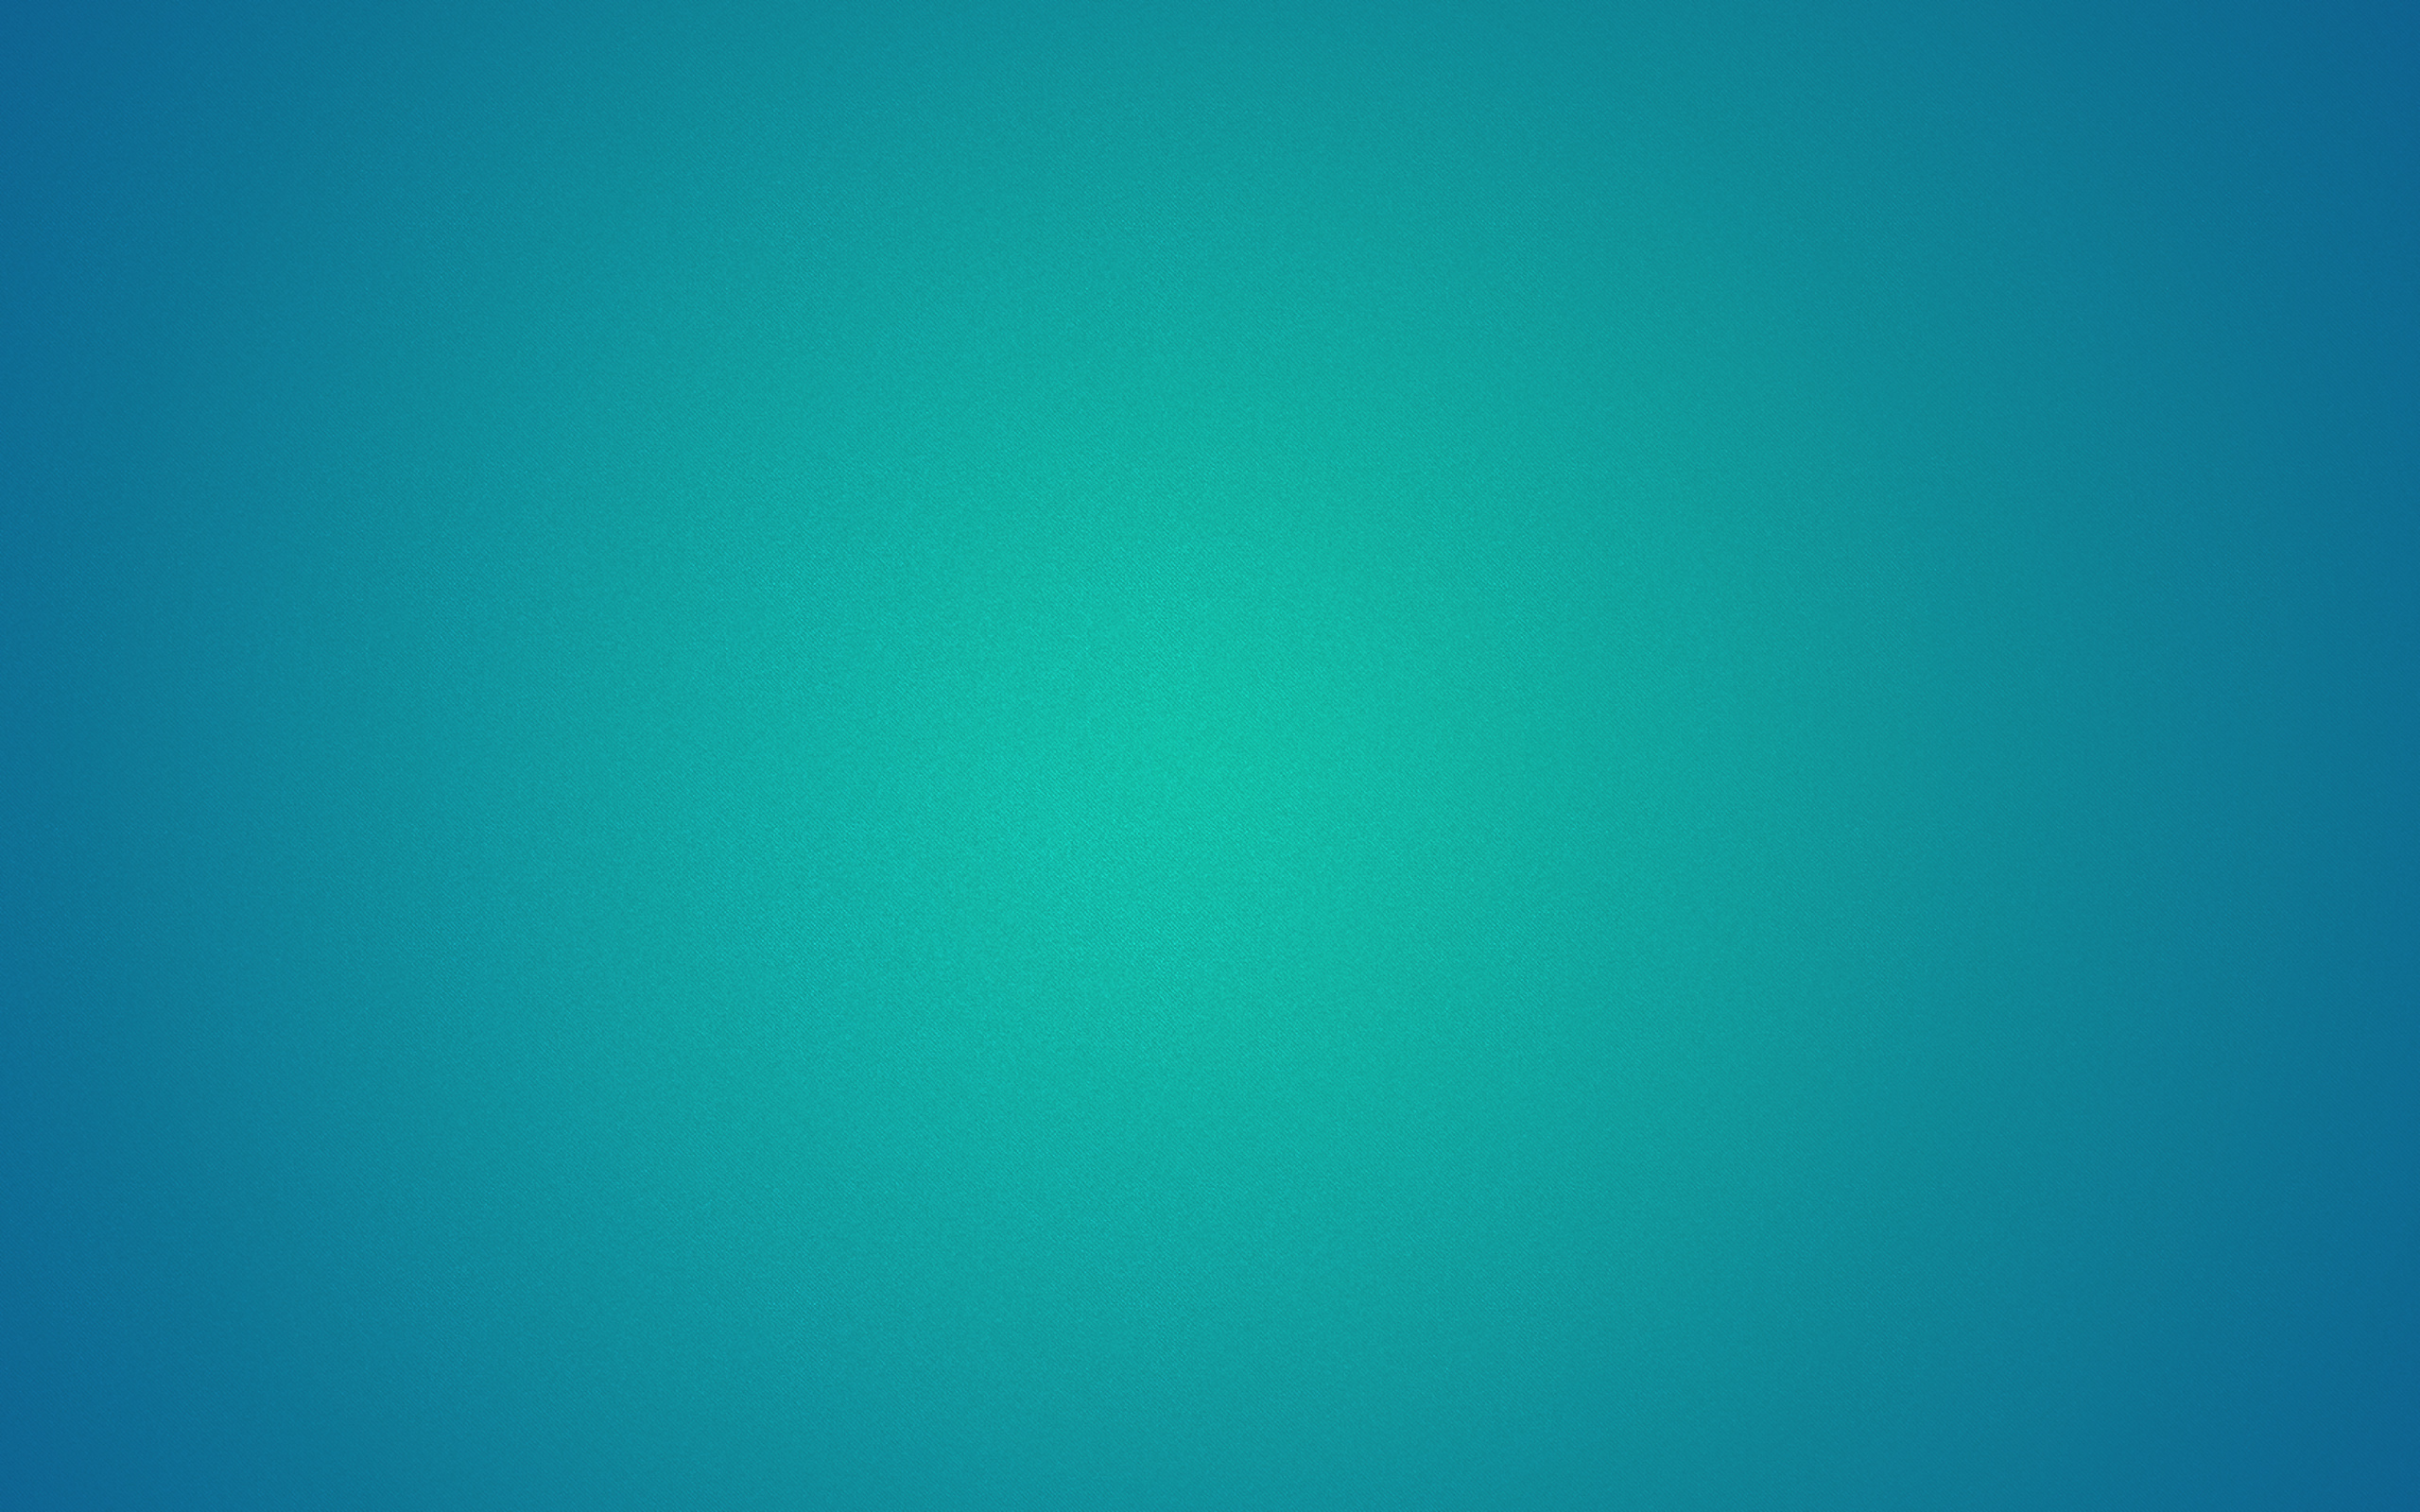 sfondo di ubuntu gnome,blu,verde,acqua,turchese,alzavola